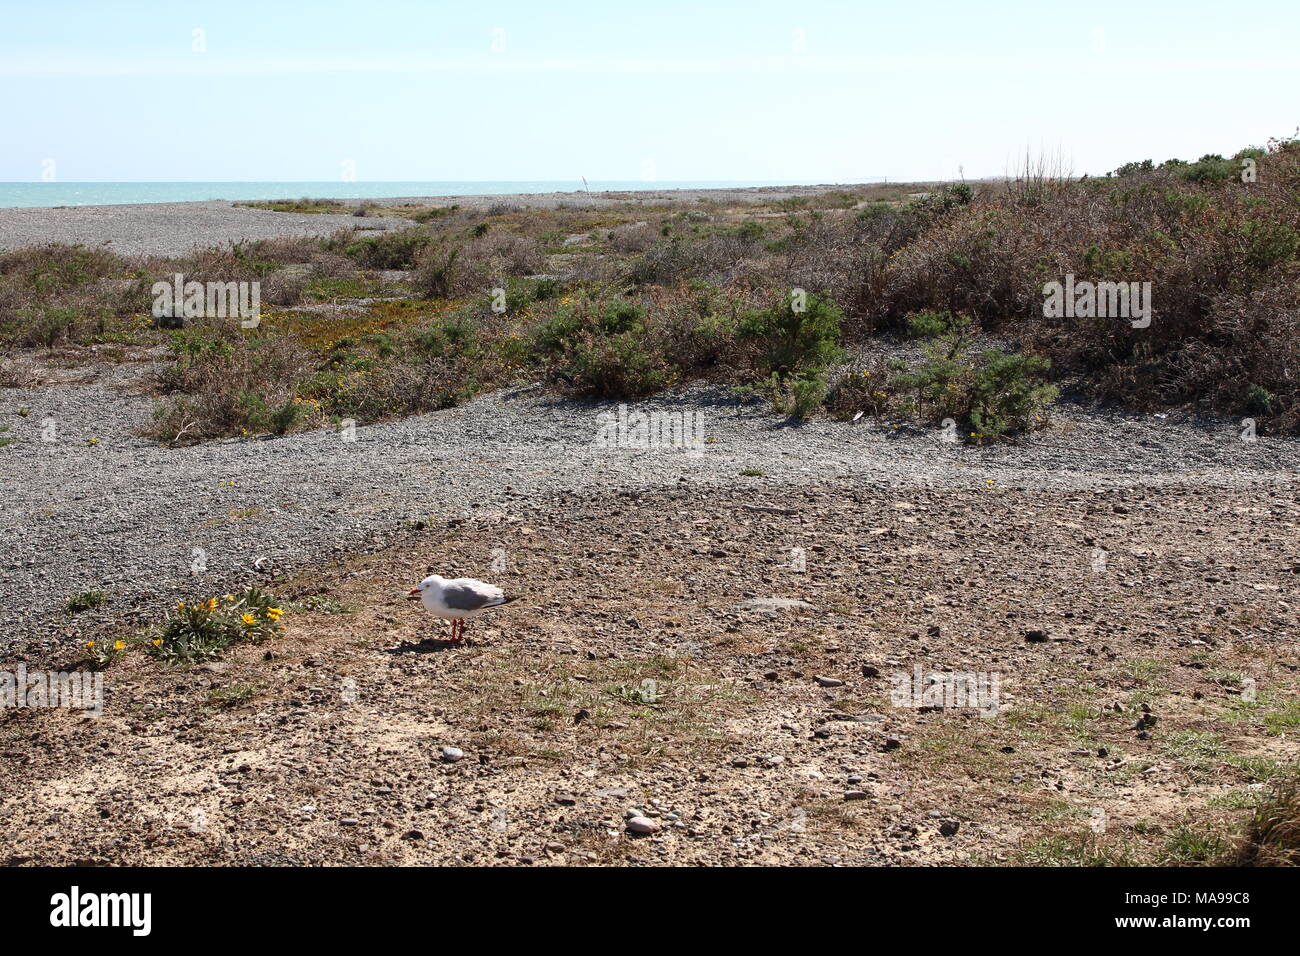 Télévision d'observation des oiseaux, une plage de galets près de Christchurch, sur l'île du Sud, une jolie vue du paysage marin. Banque D'Images